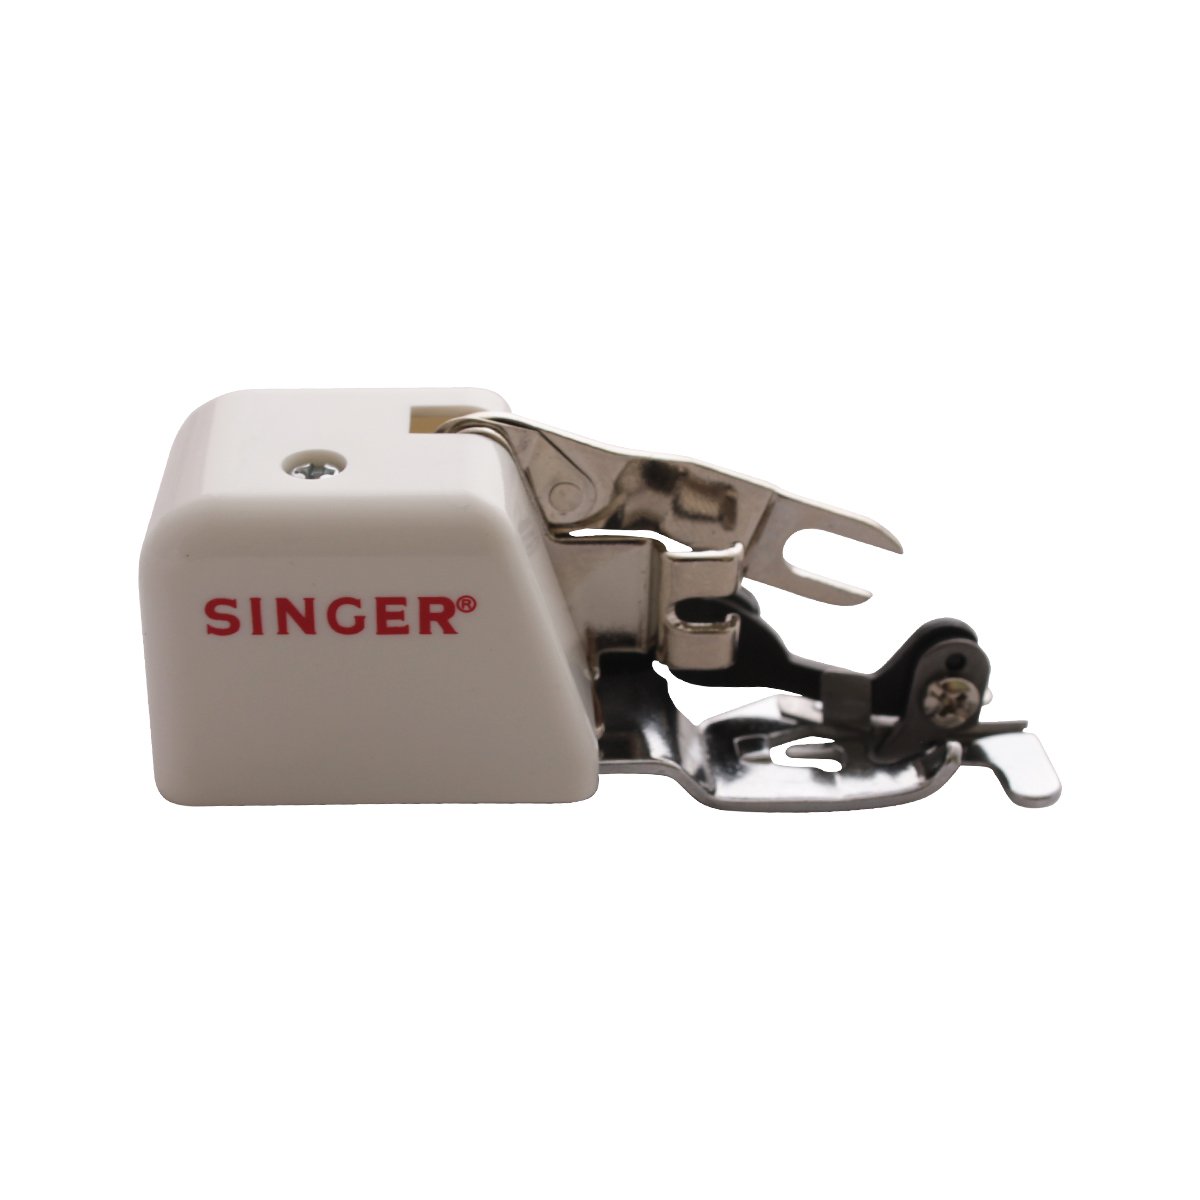 Prensatelas Singer de corte lateral y costura fácil para bordes, dobladillos y zig-zag, 2500258.06